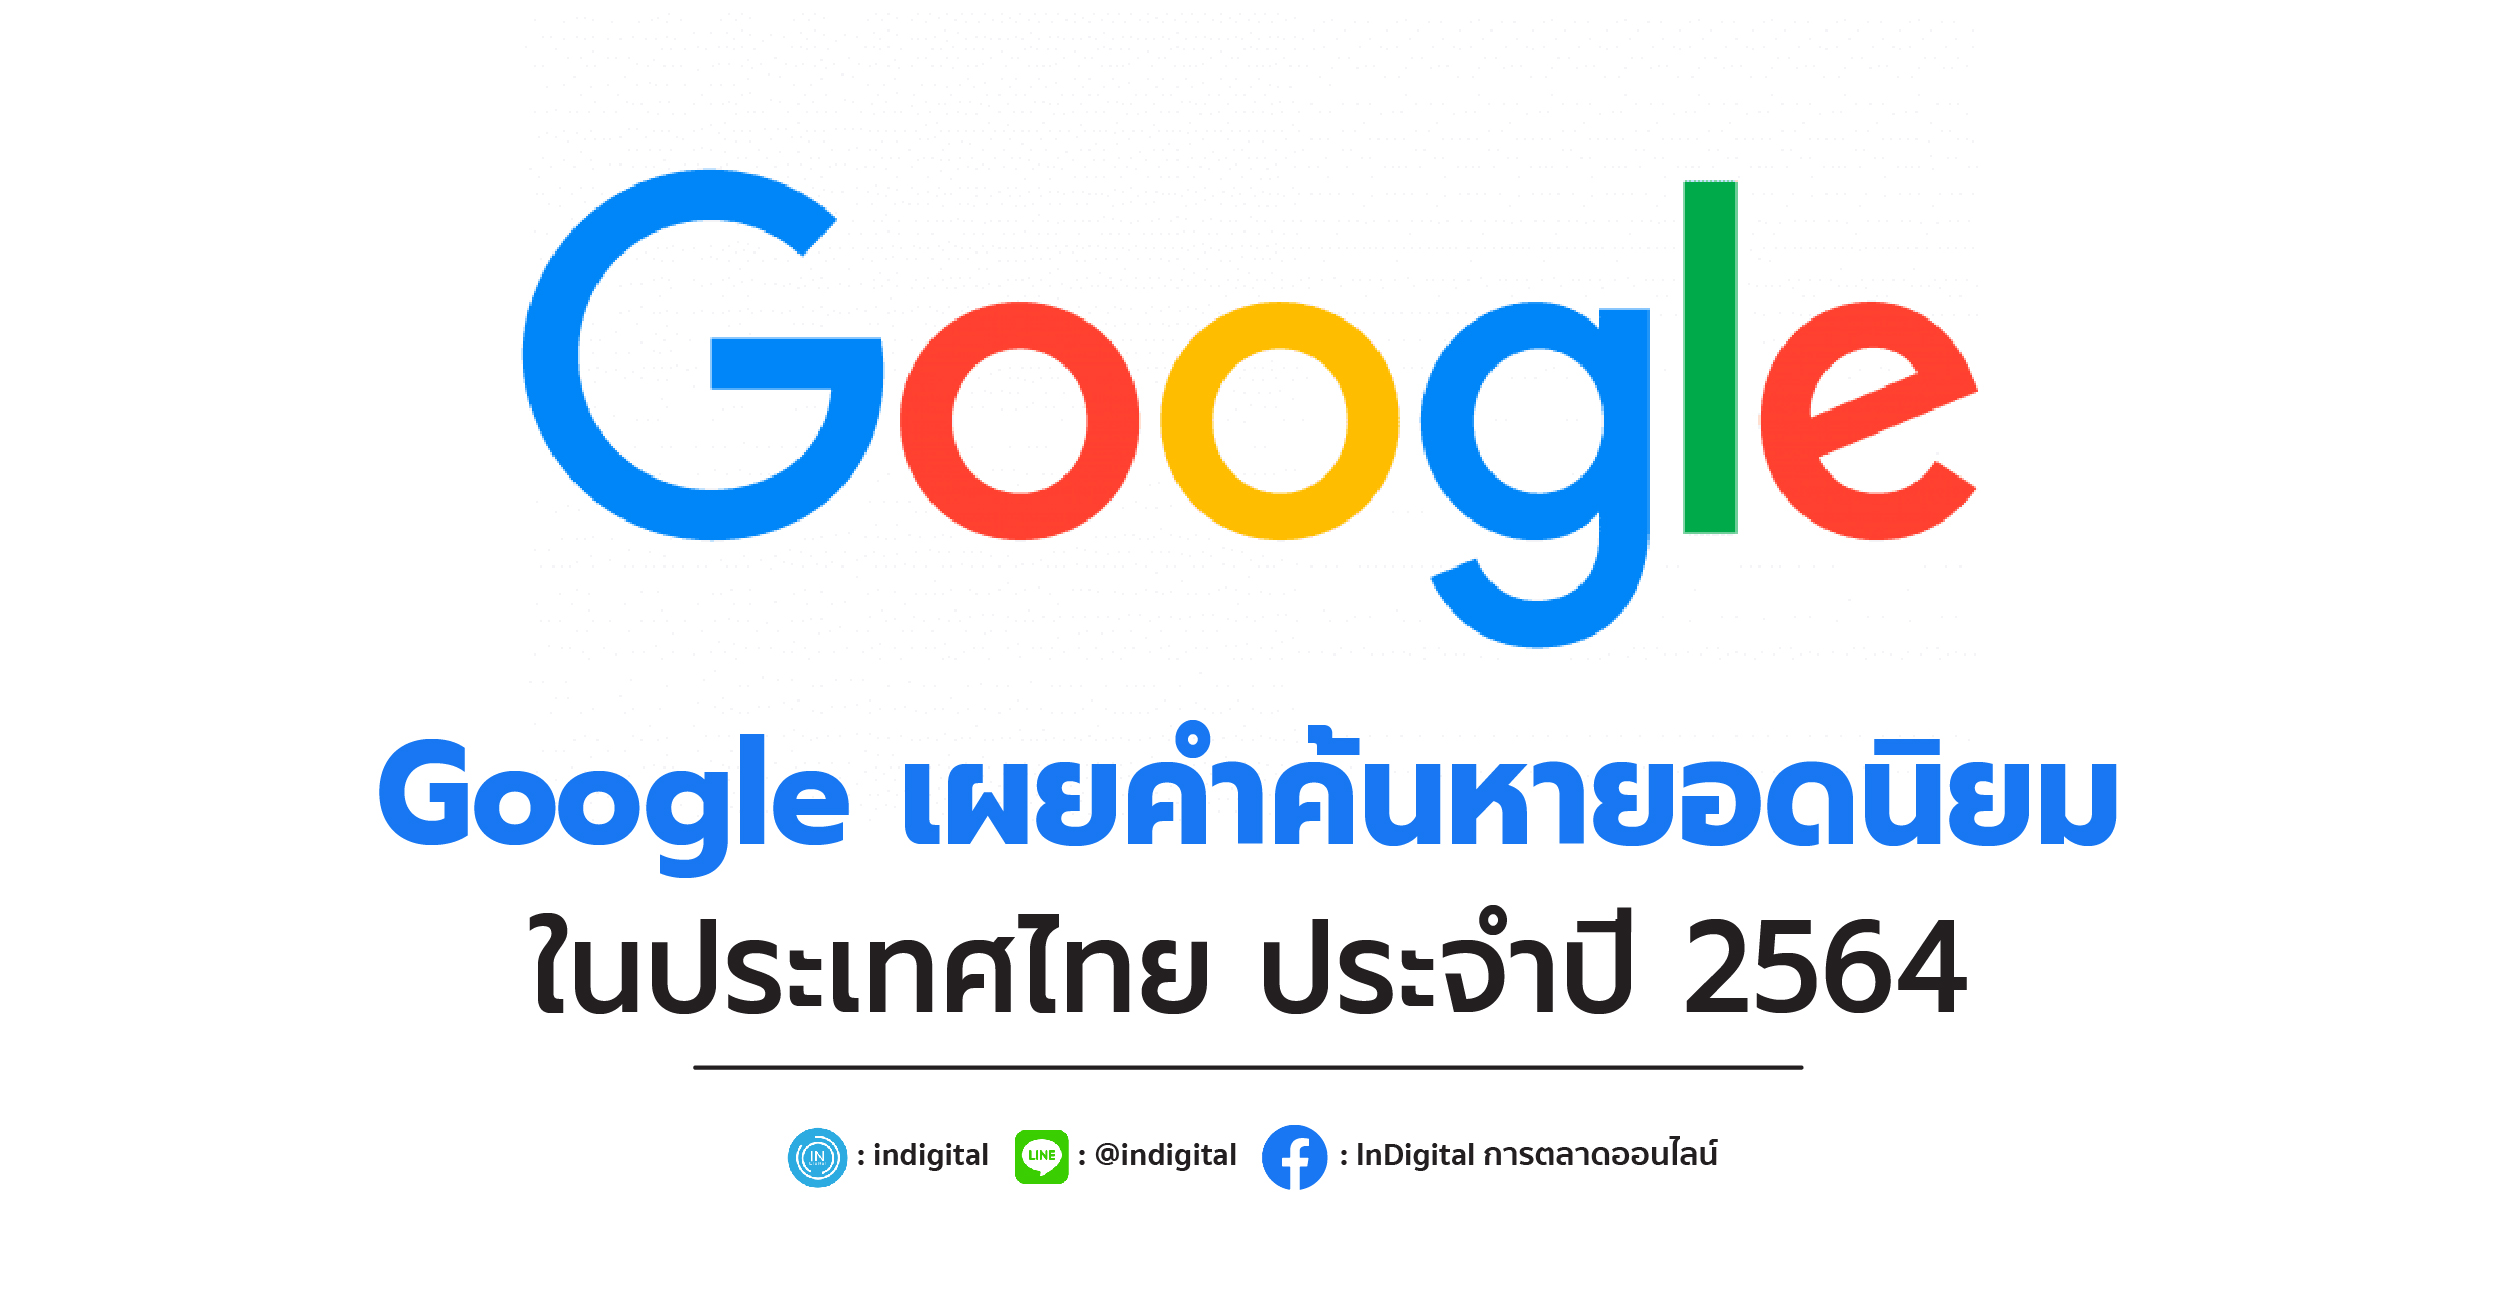 Google เผยคำค้นหายอดนิยม ในประเทศไทย ประจำปี 2564